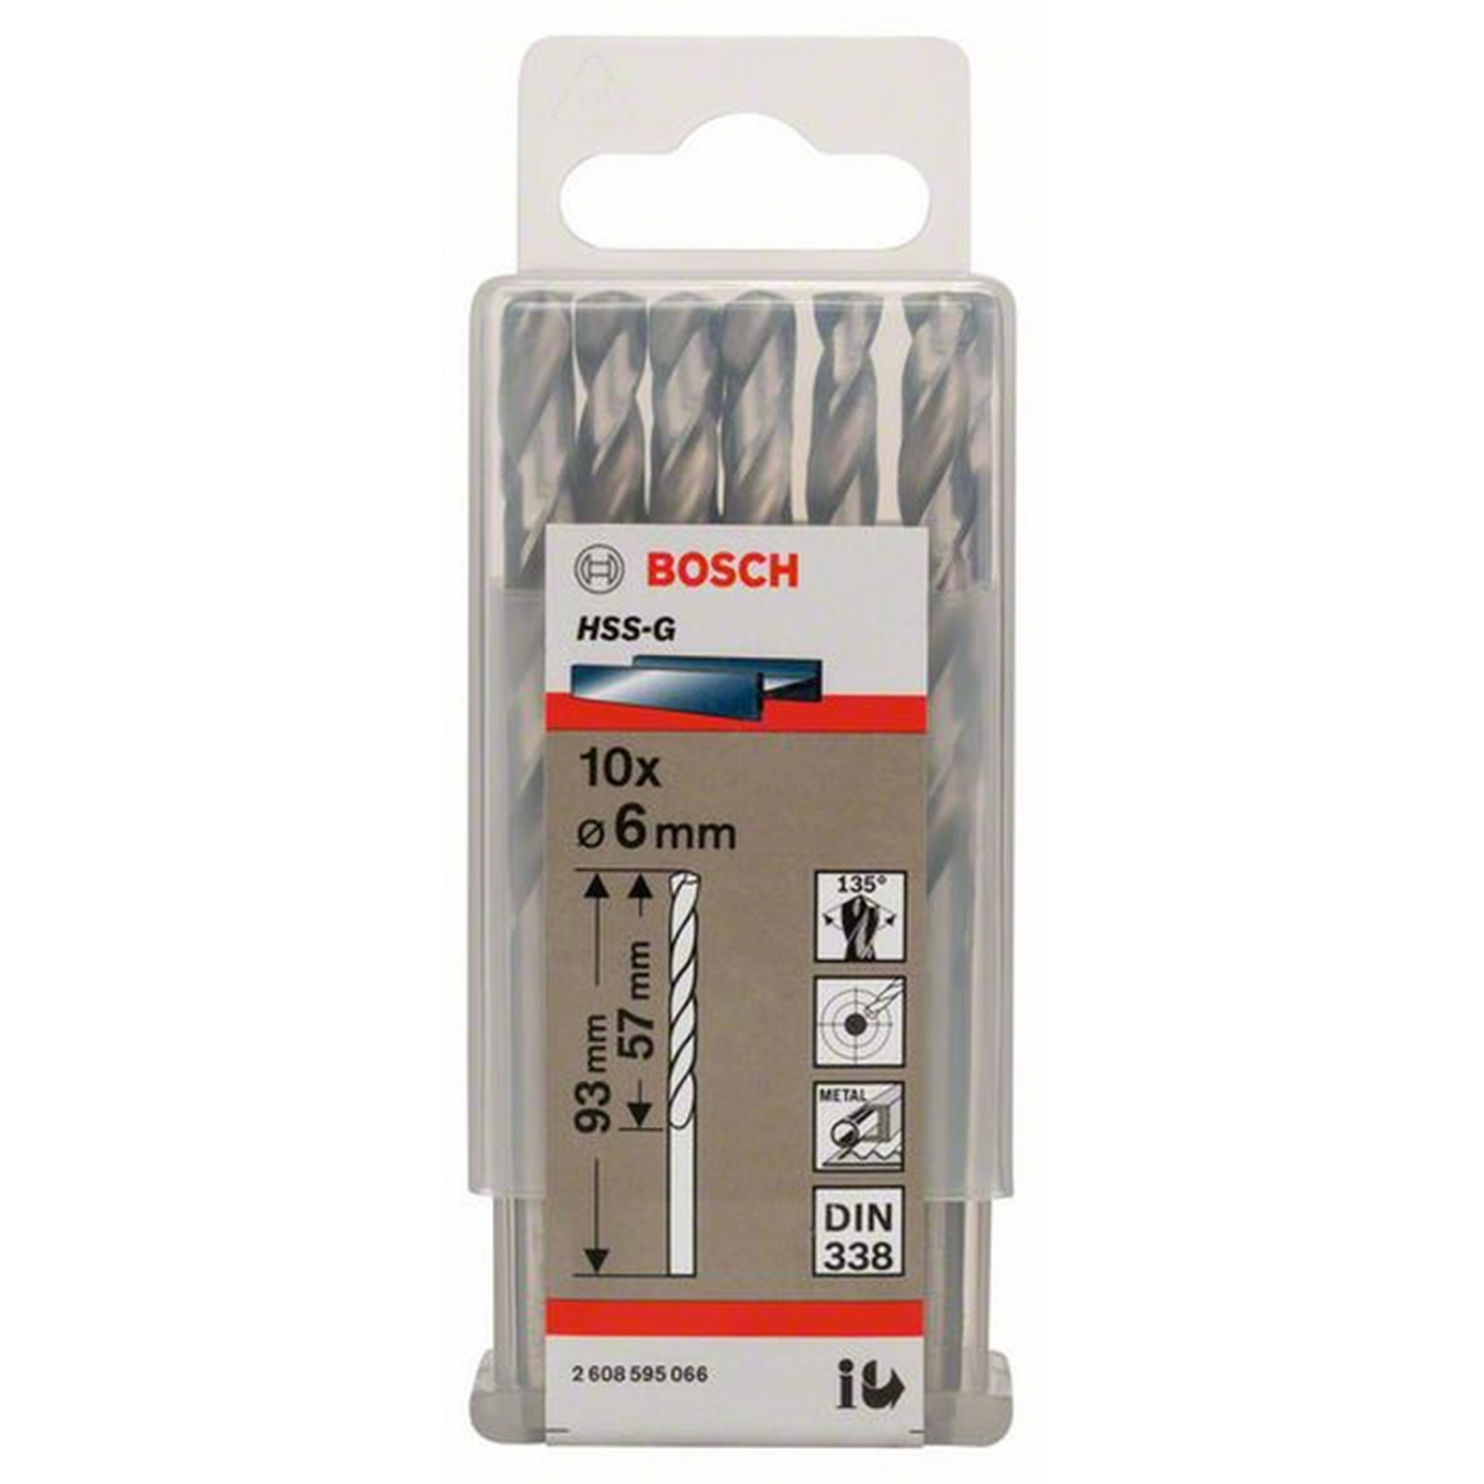 Сверло по металлу Bosch Eco 10 HSS-G 6мм 2608595066 сверло по металлу bosch eco 10 hss g 7мм 2608595070